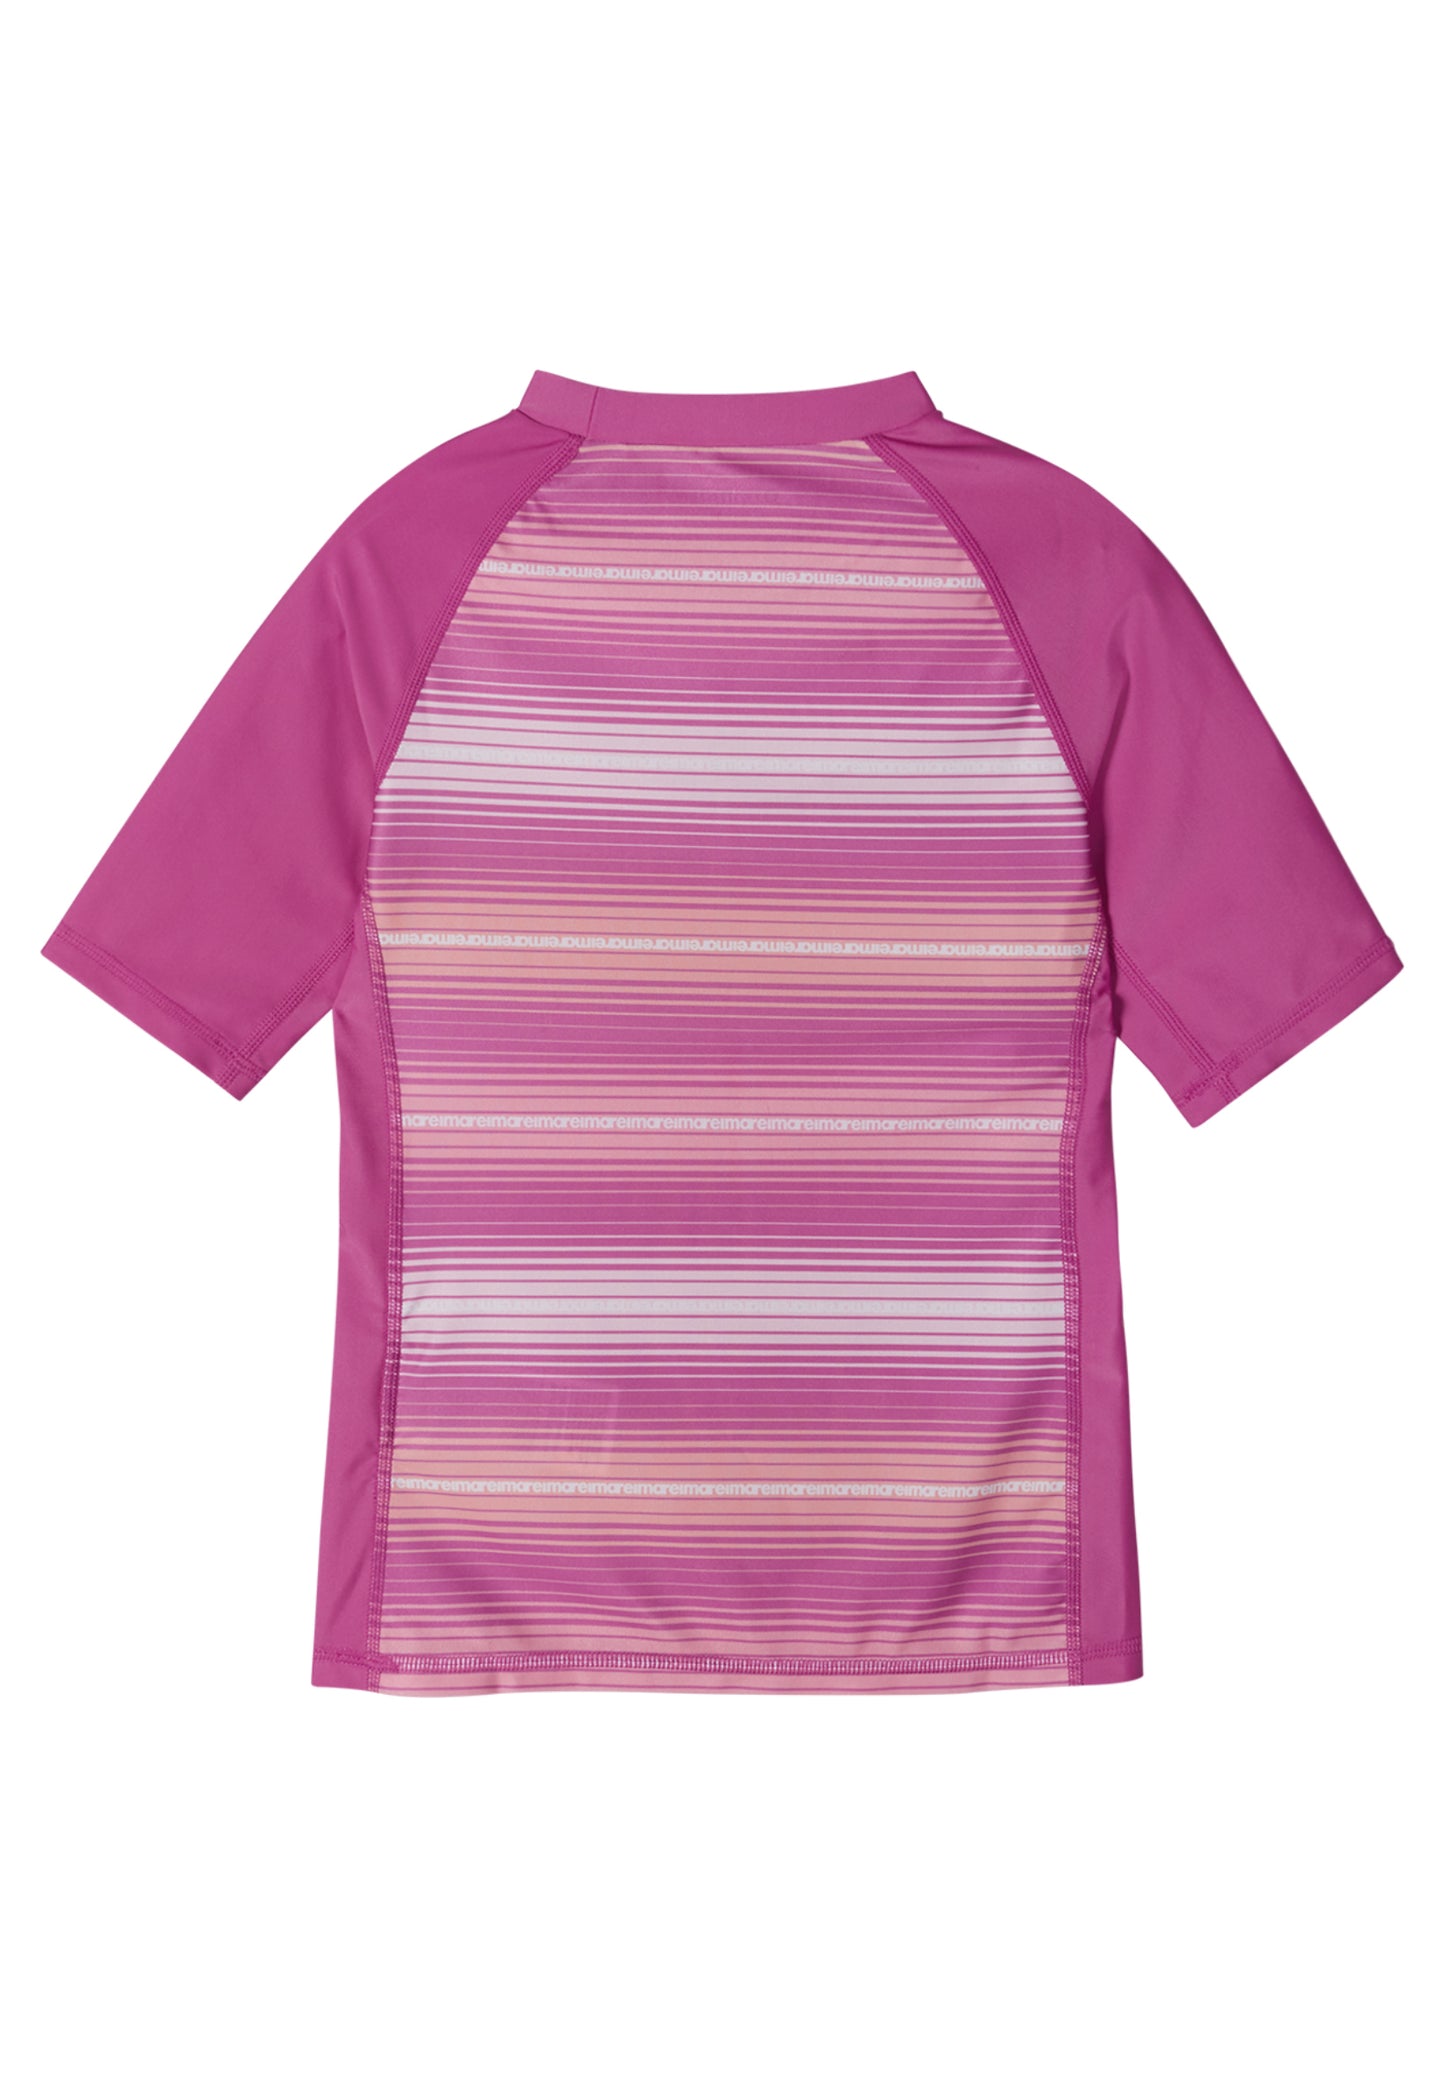 REIMA UV-Shirt<br> Joonia<br>Gr. 116, 134, 140<br> UV-Schutzfaktor 50+<br> schnelltrocknend